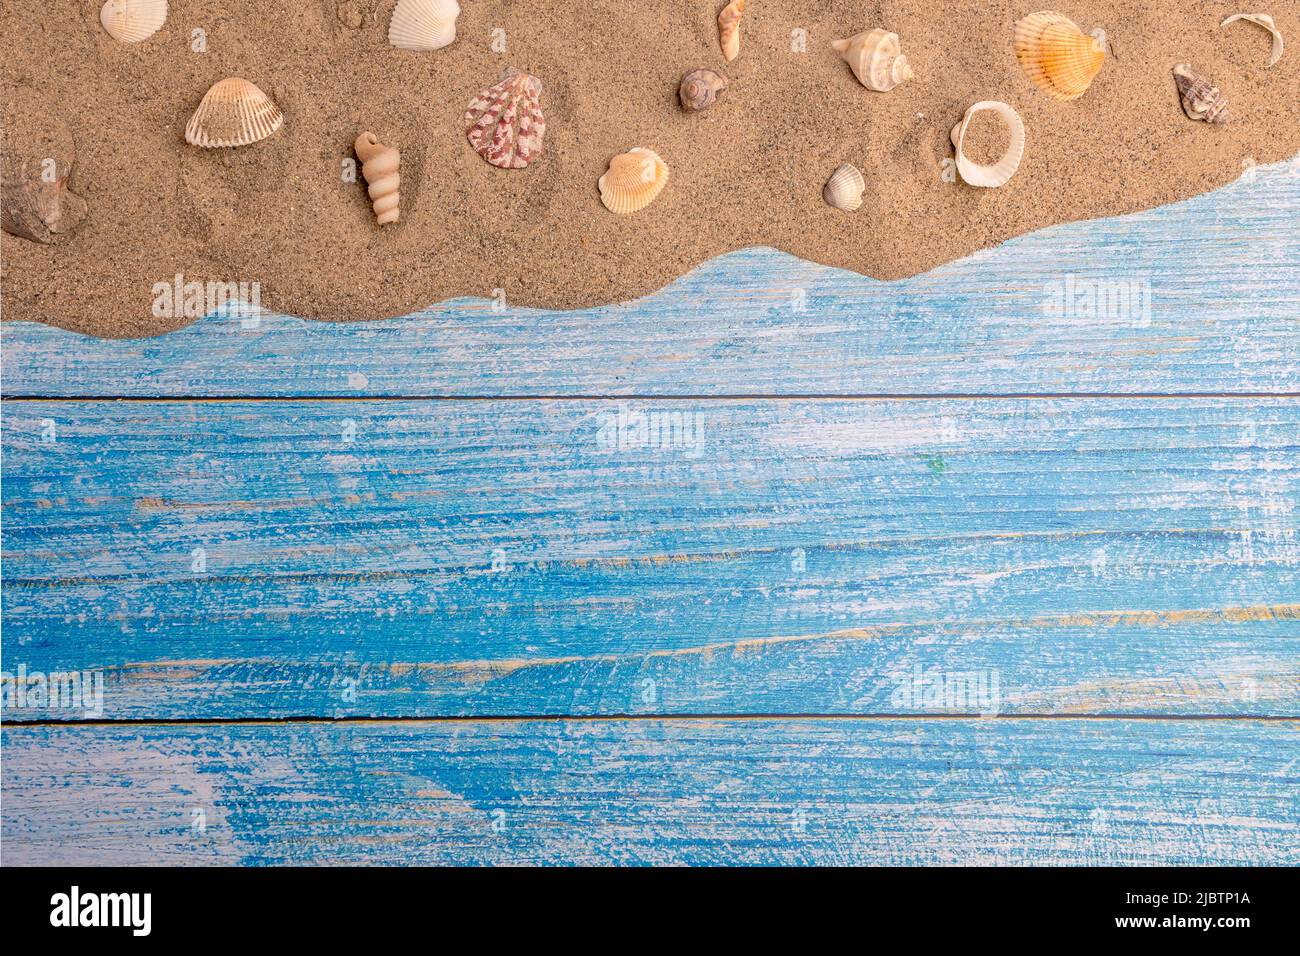 Muscheln auf dem Sand auf blauem Hintergrund. Sommerurlaub, Strand, Entspannung, Meer, Meer, Reisekonzept. Stockfoto